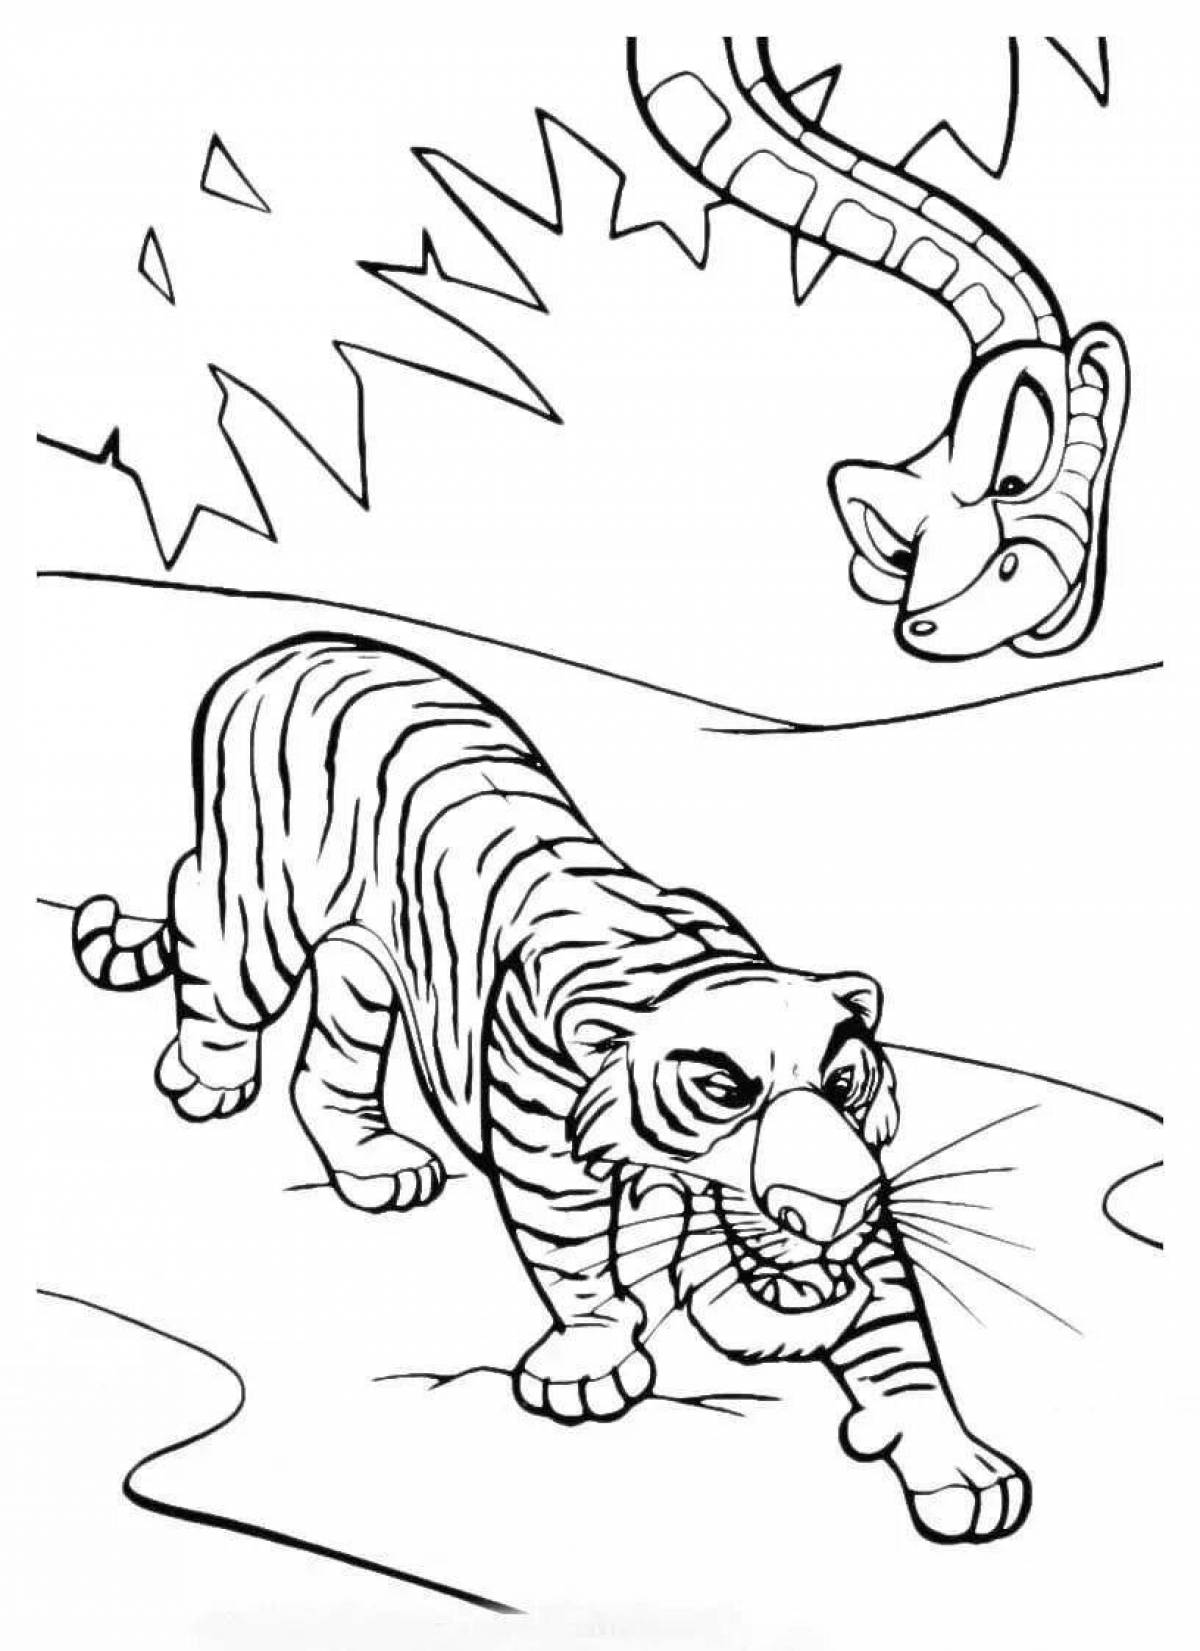 Великолепно окрашенный тигр шерхан раскраска